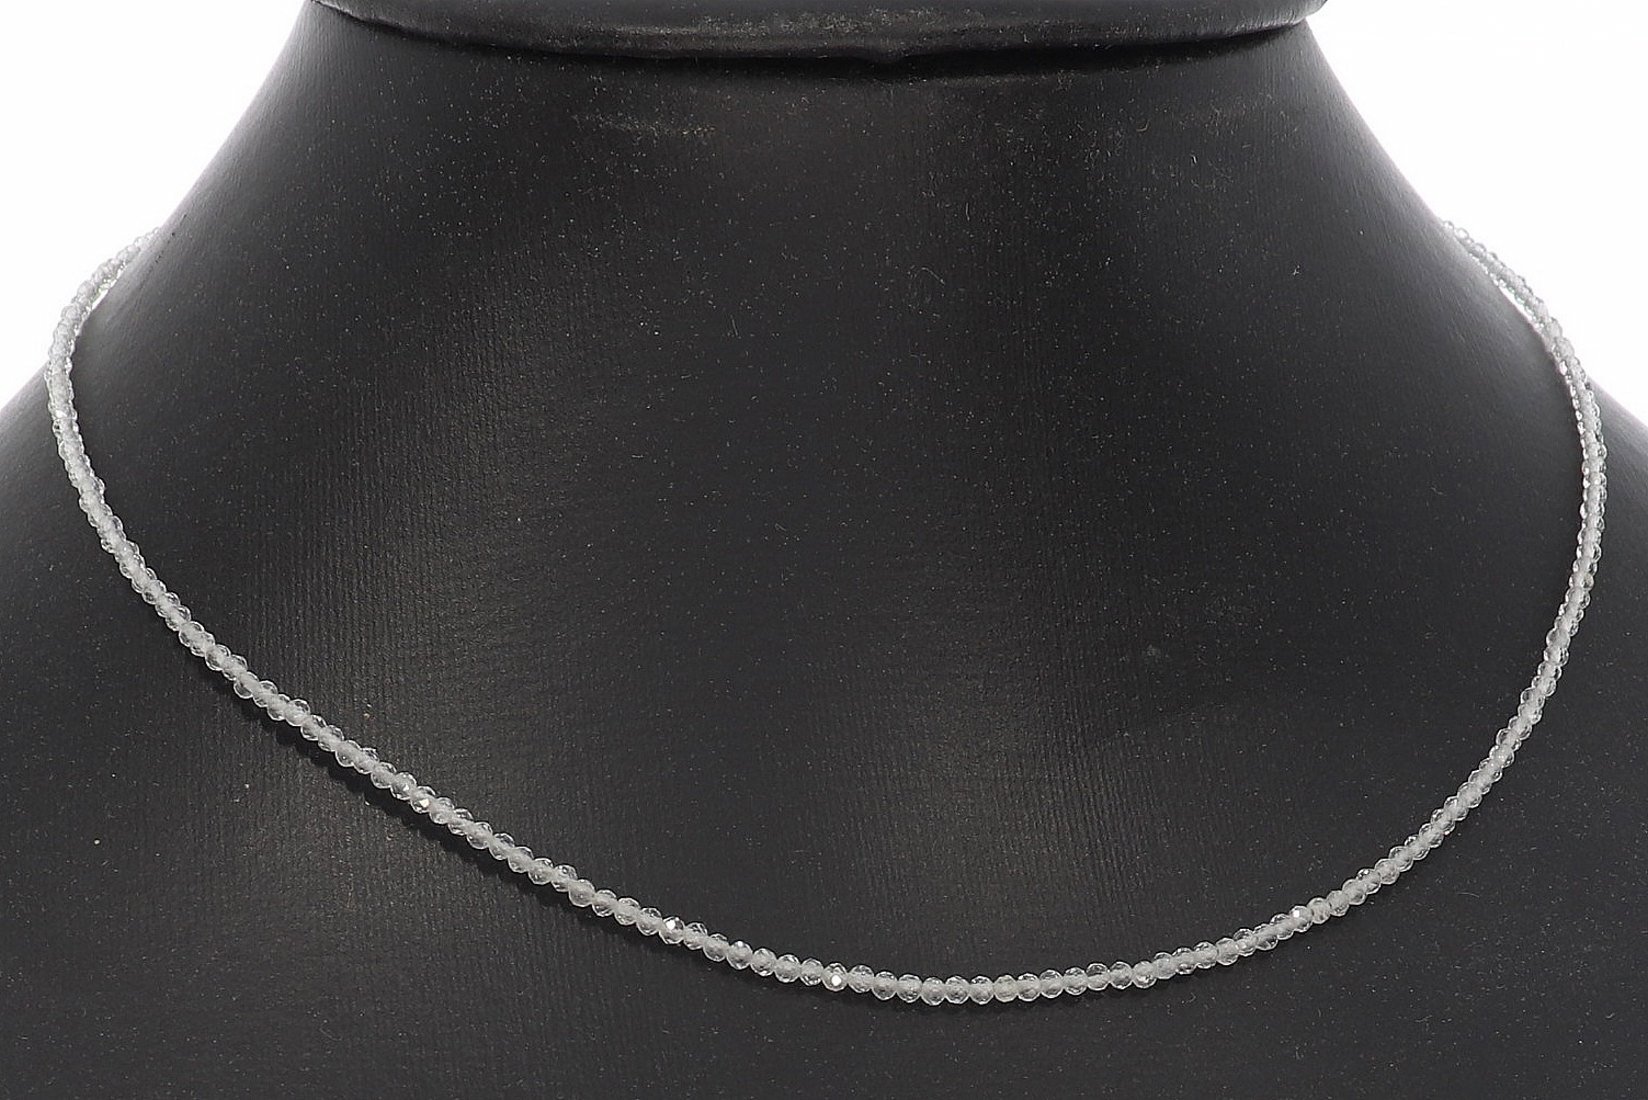 Topas Kugel Halskette facettiert Silber farben 2mm - 40-45cm Kettenverlängerer KK335